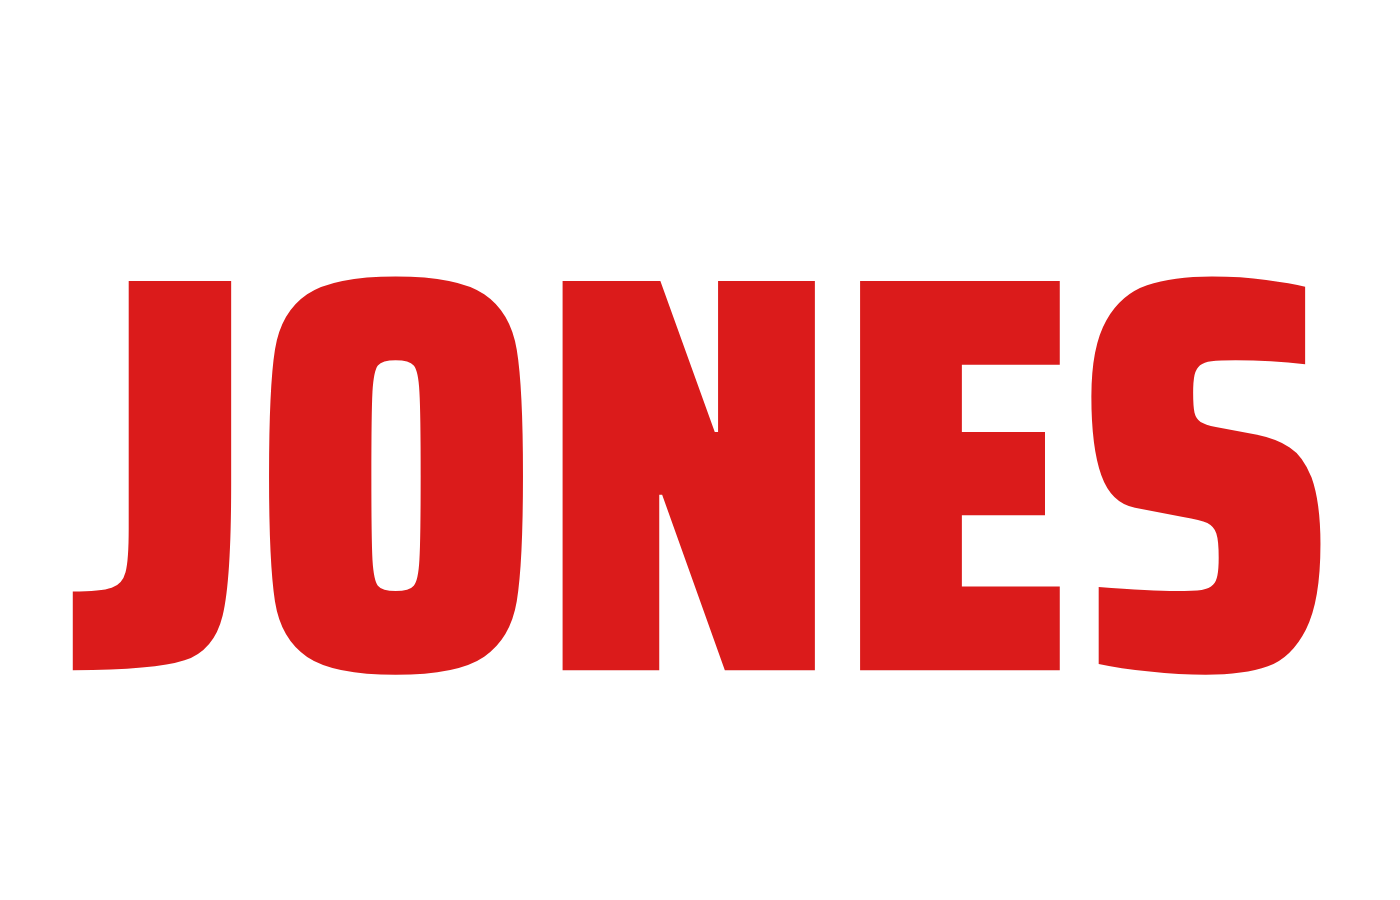 Mayor Tishaura O. Jones